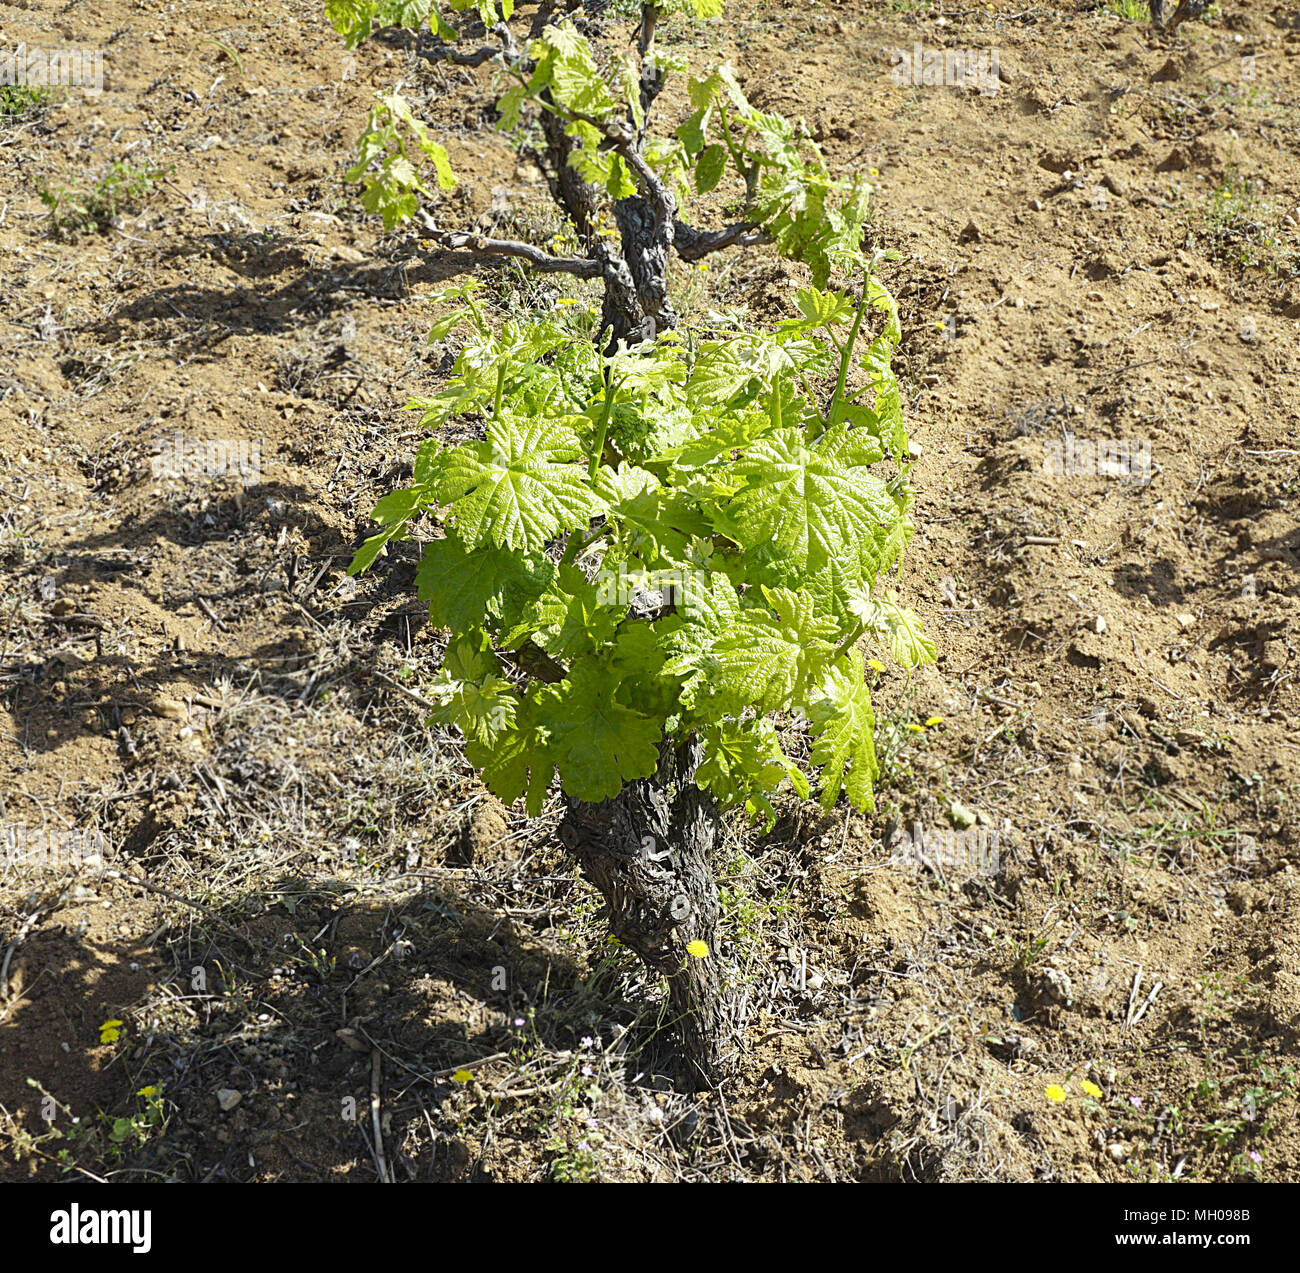 La vigne dans le vignoble avec de jeunes feuilles vertes sous le soleil de printemps sur la terre fraîchement creusée Banque D'Images